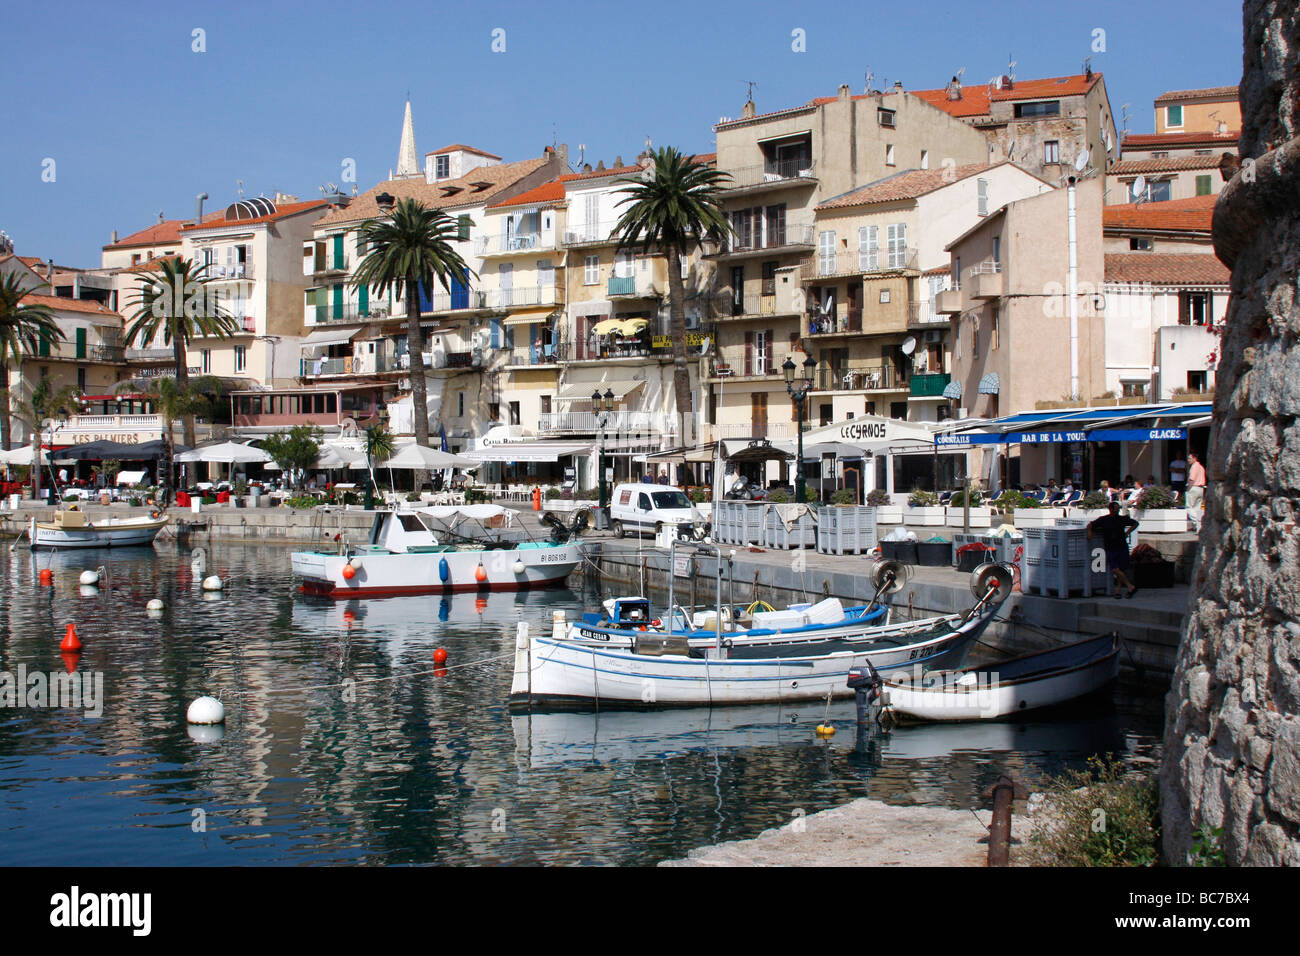 Colorés et atmosphérique Calvi est la plus visité holiday resort et port sur l'île Méditerranéenne de Corse Banque D'Images